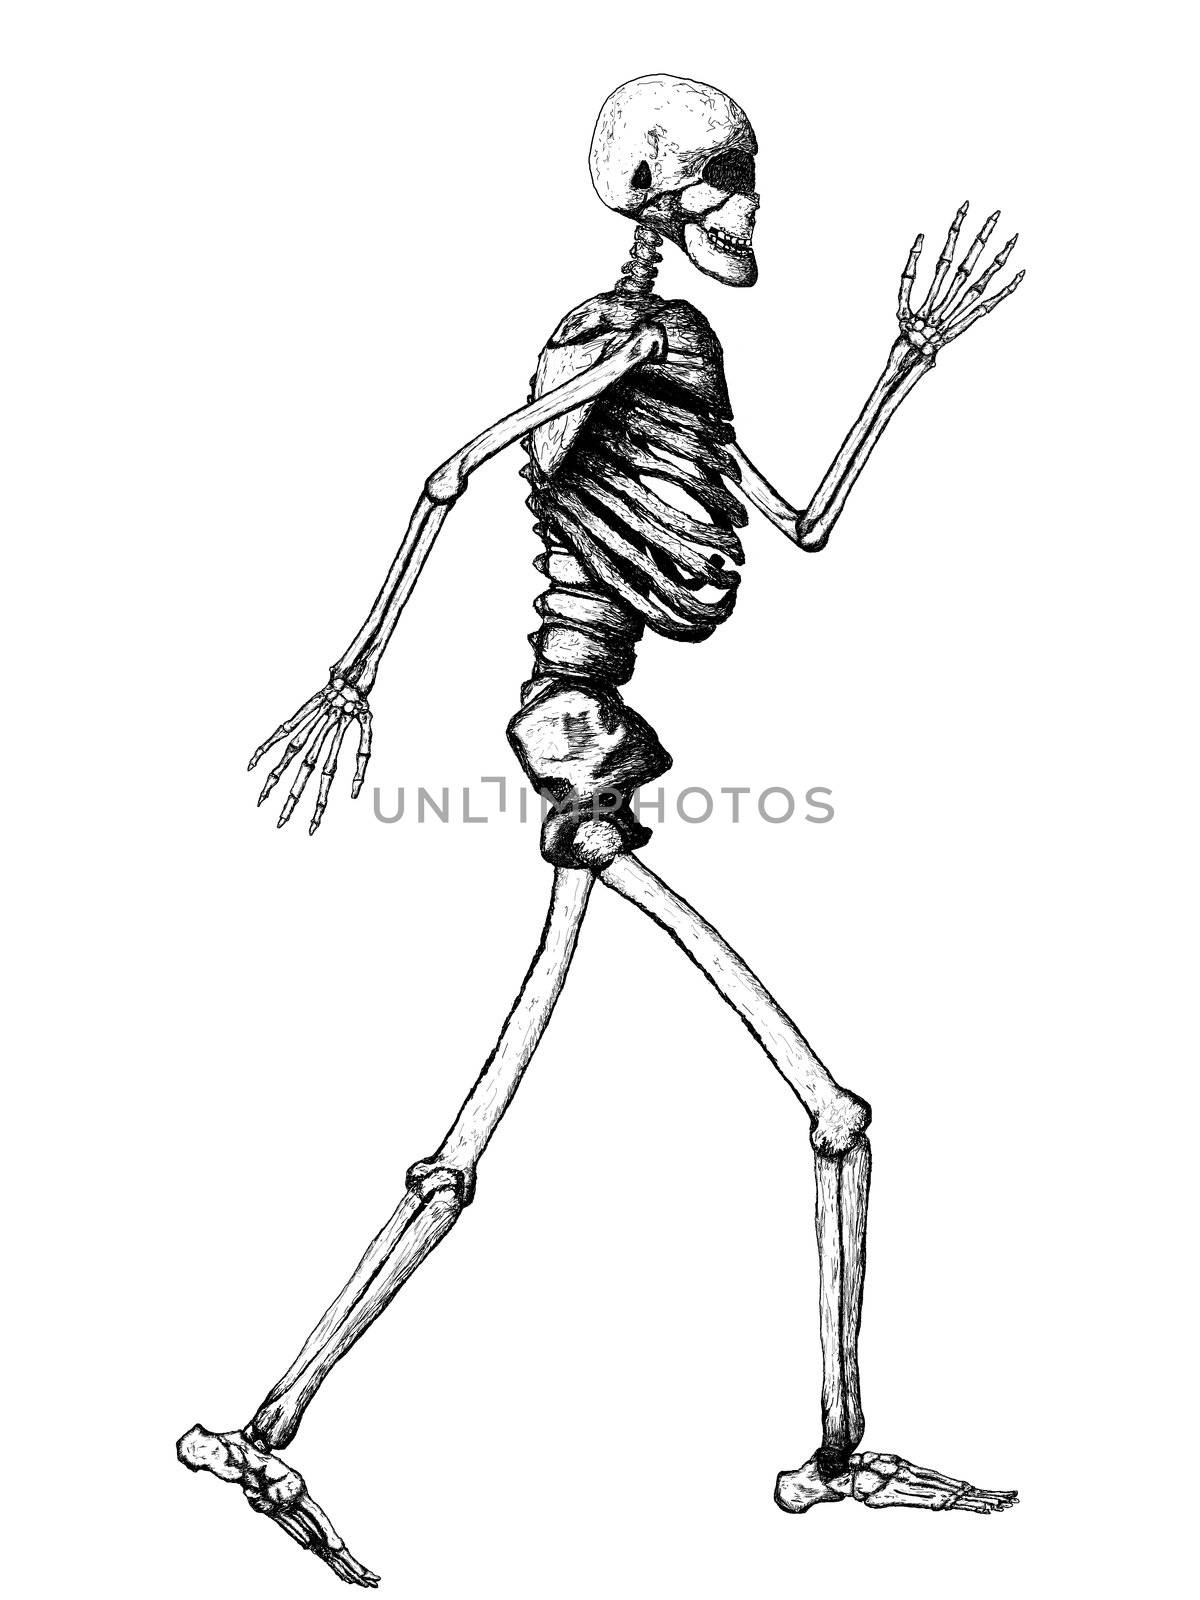 Full Human Skeleton Illustration on White Background